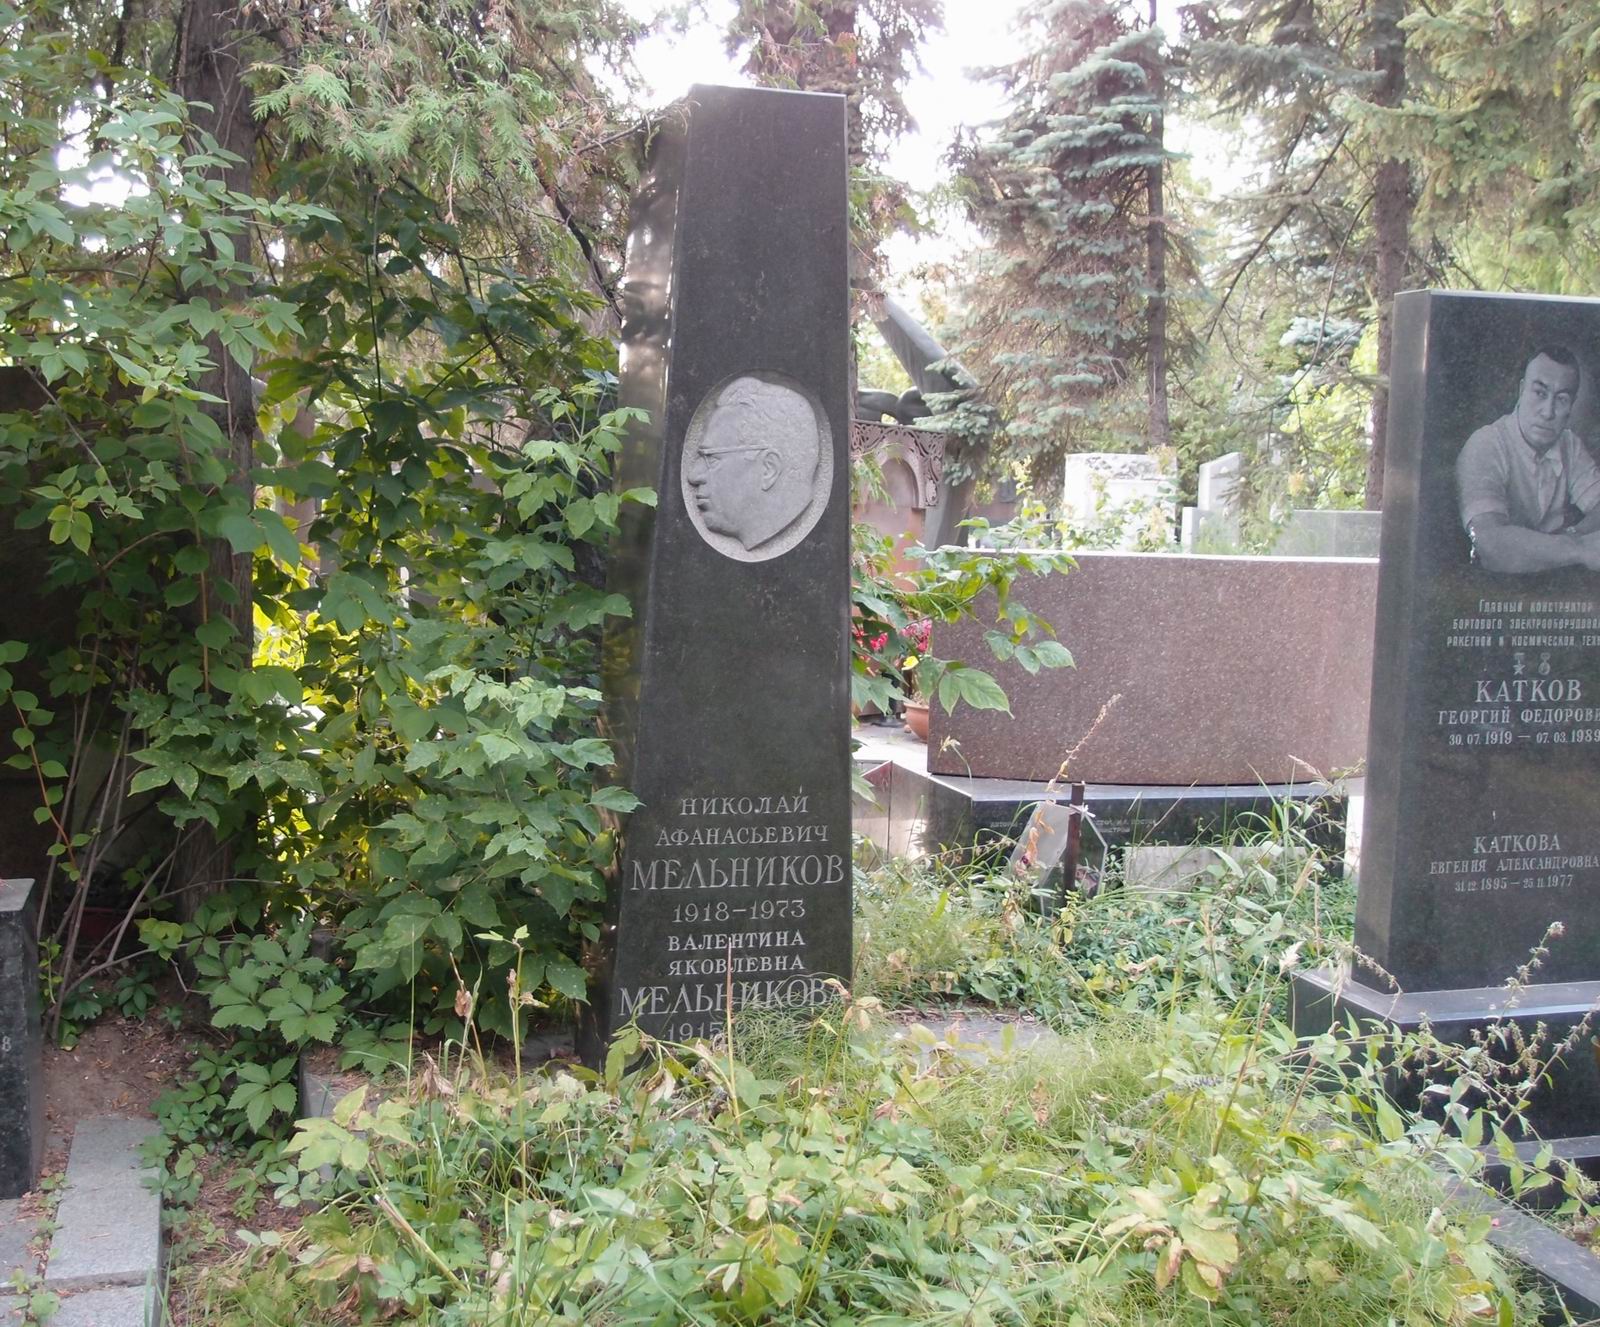 Памятник на могиле Мельникова Н.А. (1918–1973), ск. Г.Потапов, арх. Т.Муравьёва, на Новодевичьем кладбище (7–3–17).